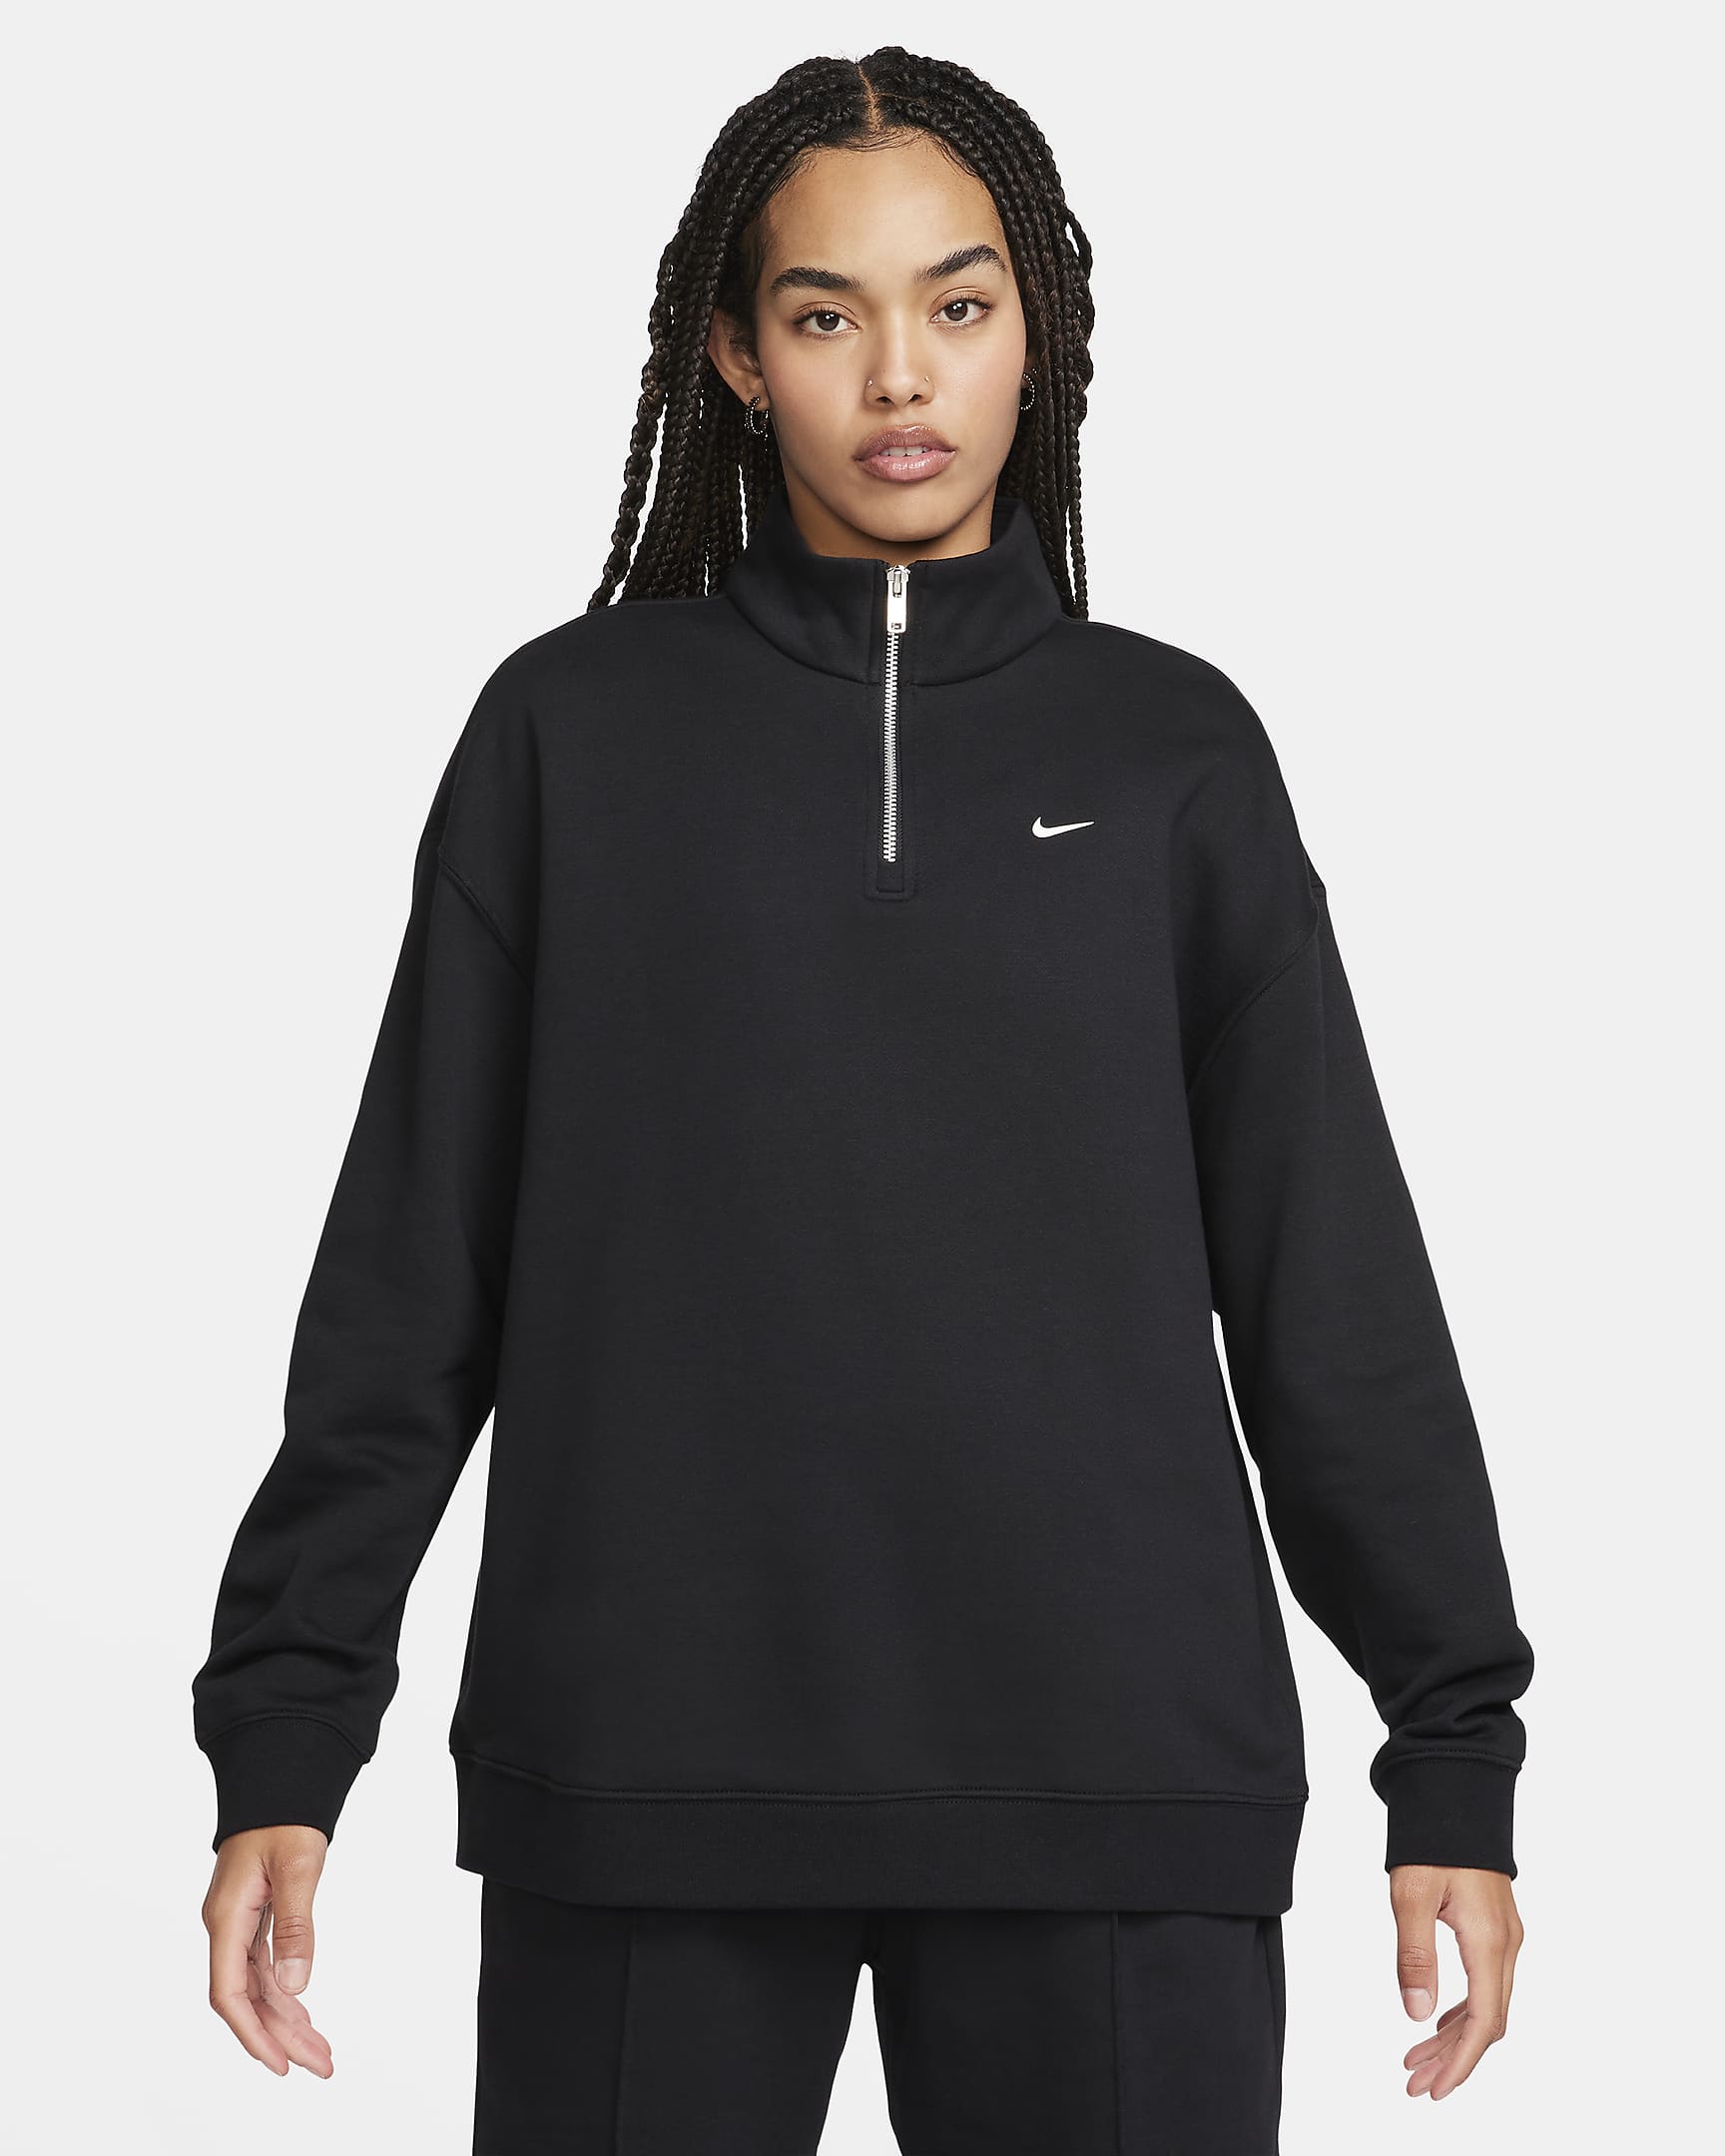 Nike Sportswear Women's Oversized 1/4-Zip Fleece Top. Nike AU